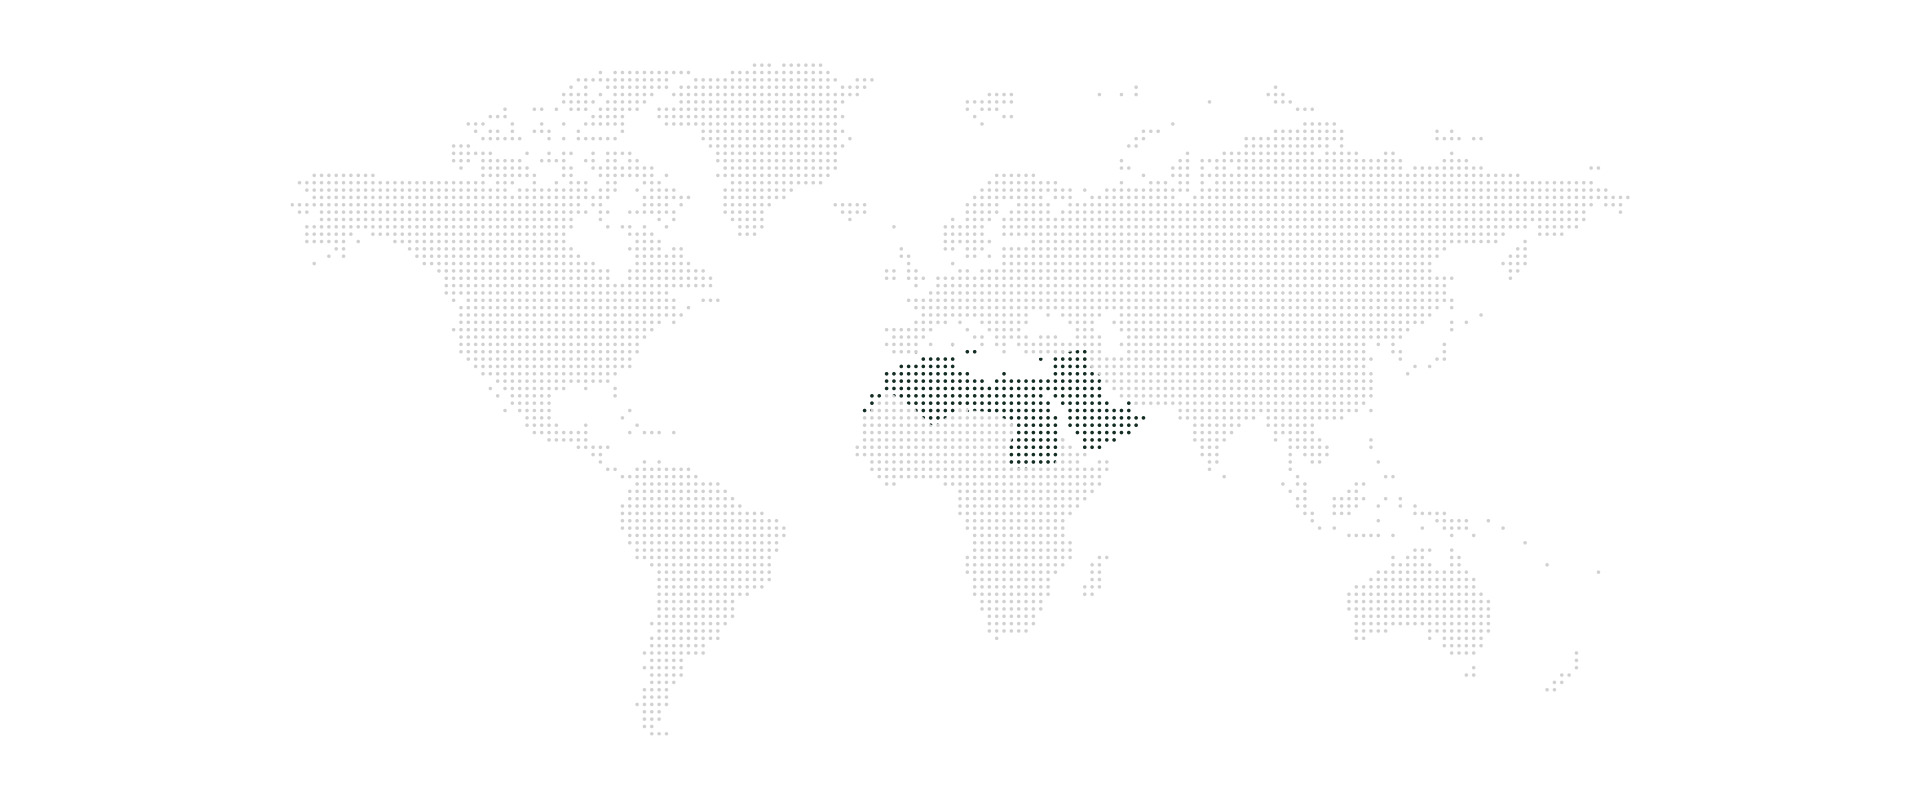 PlusVC world map